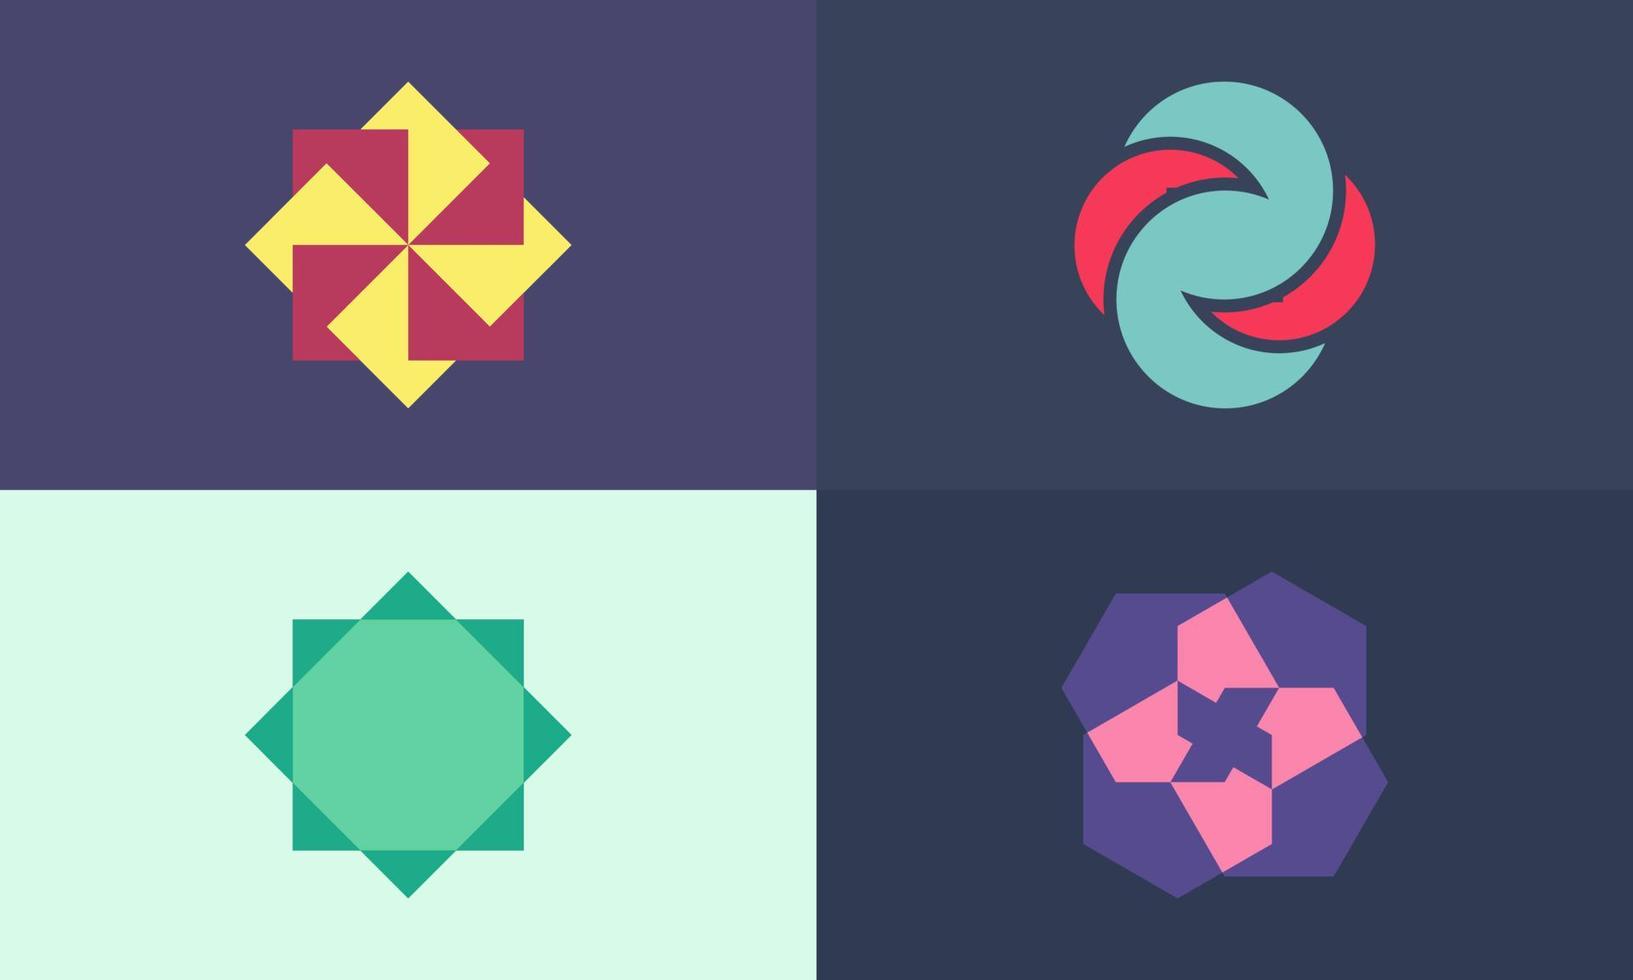 ensemble de logo de série géométrique abstraite, style simple et moderne, symbole minimaliste et coloré, approche géométrique unique adaptée à toutes sortes d'entreprises et de marques vecteur